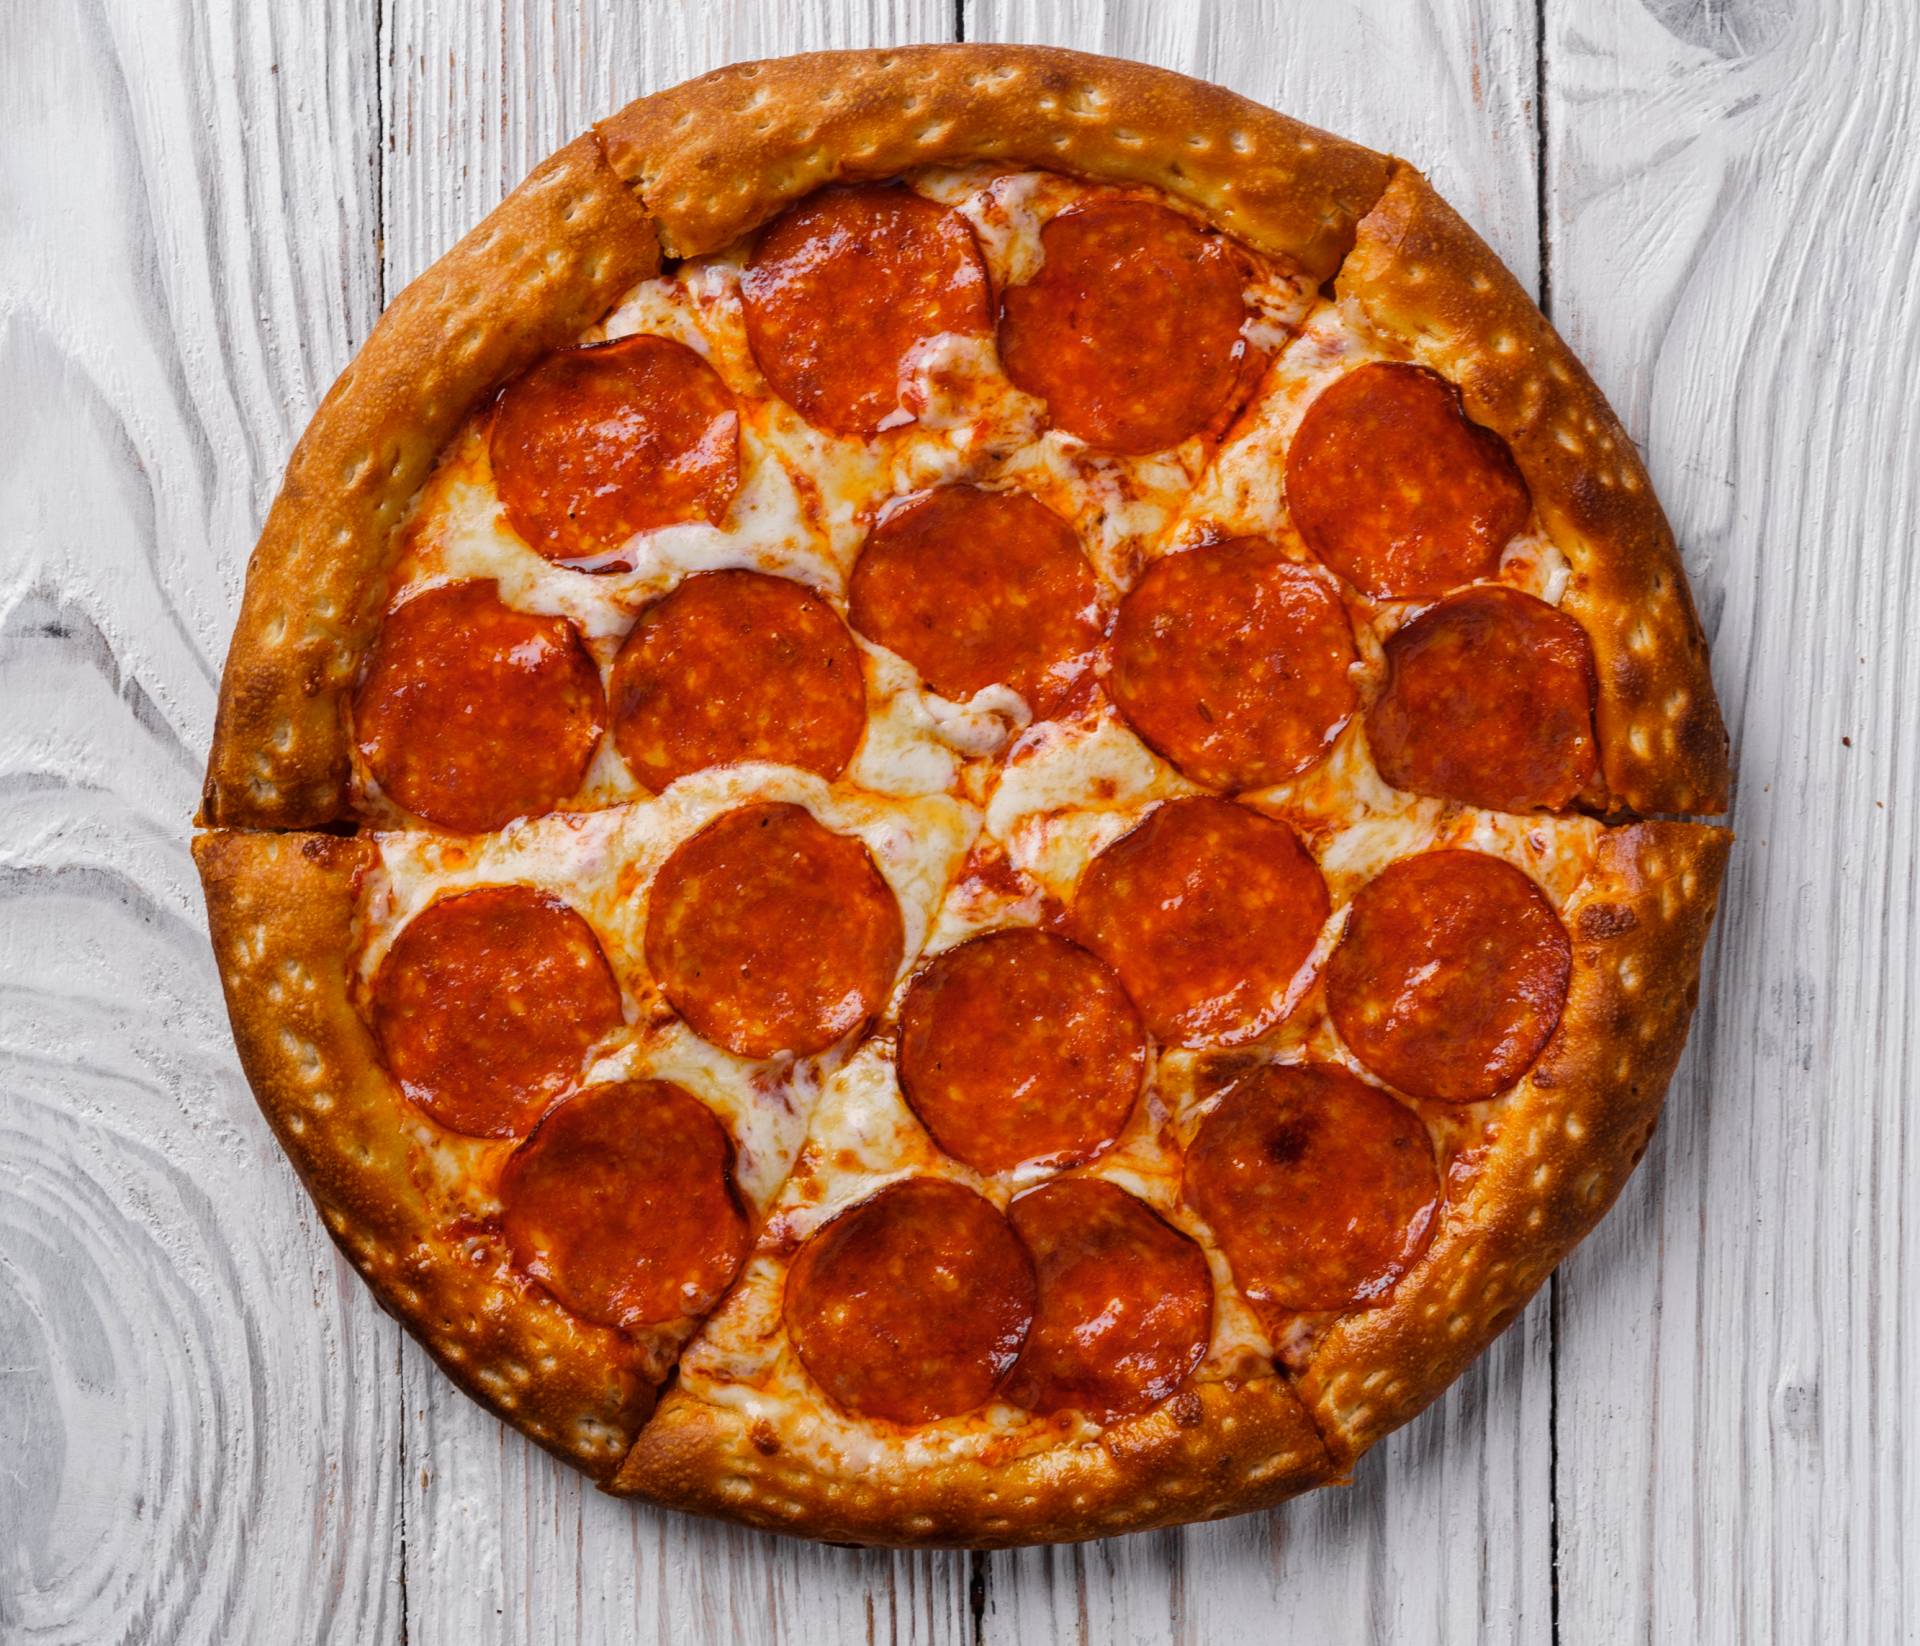 сколько стоит большая пицца пепперони фото 92